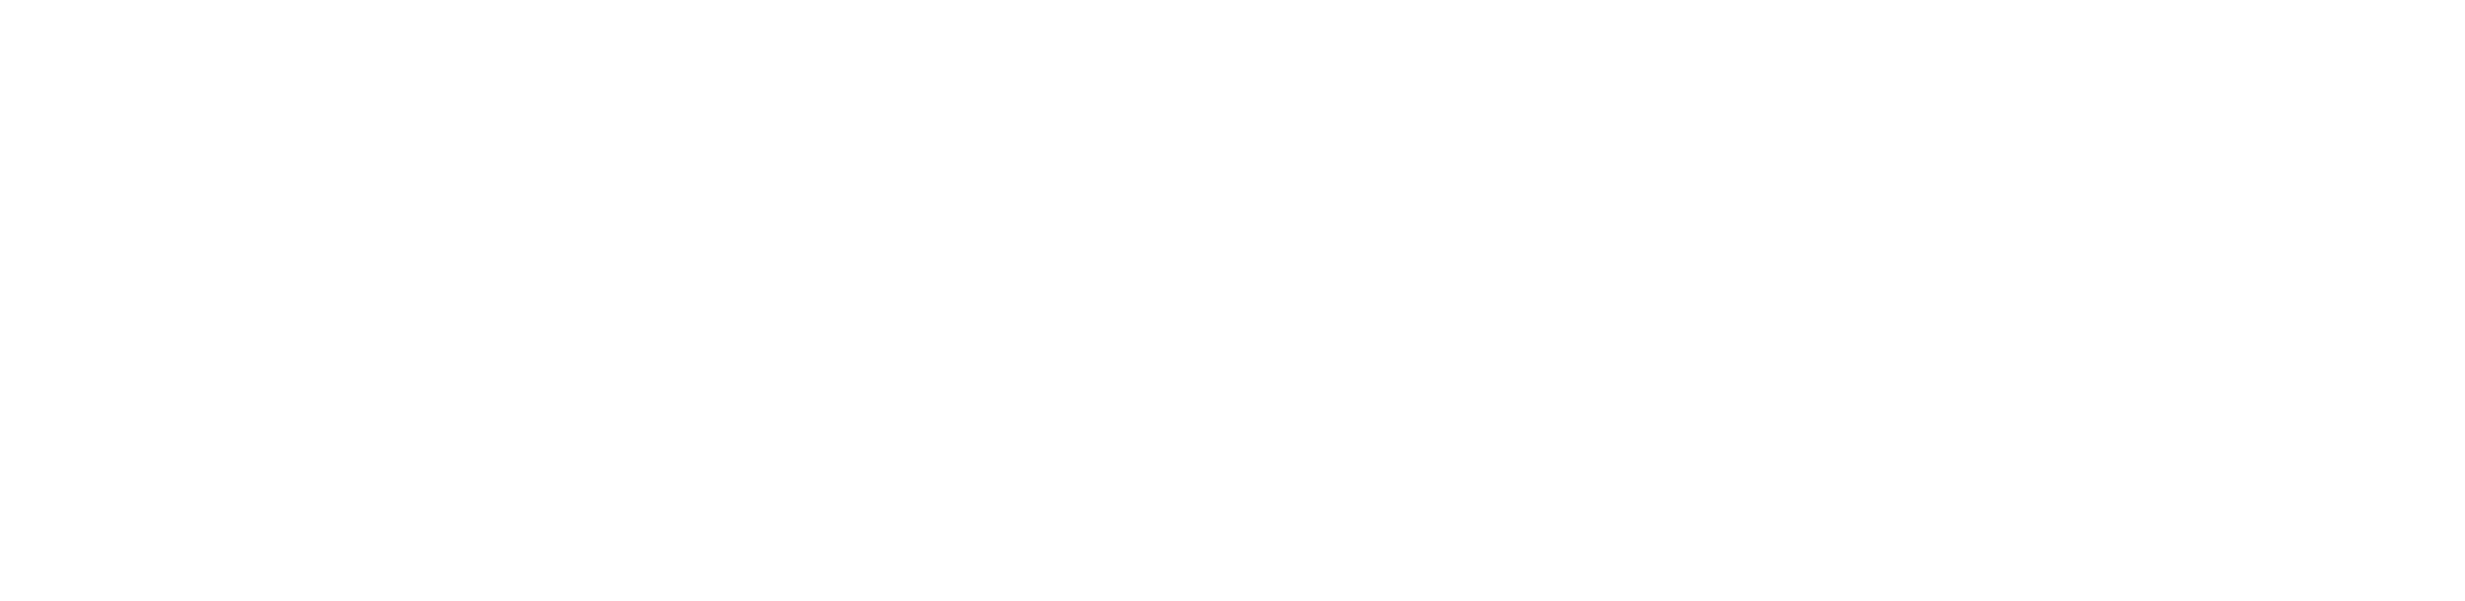 Черный Верховный логотип PNG Image бесплатно скачать